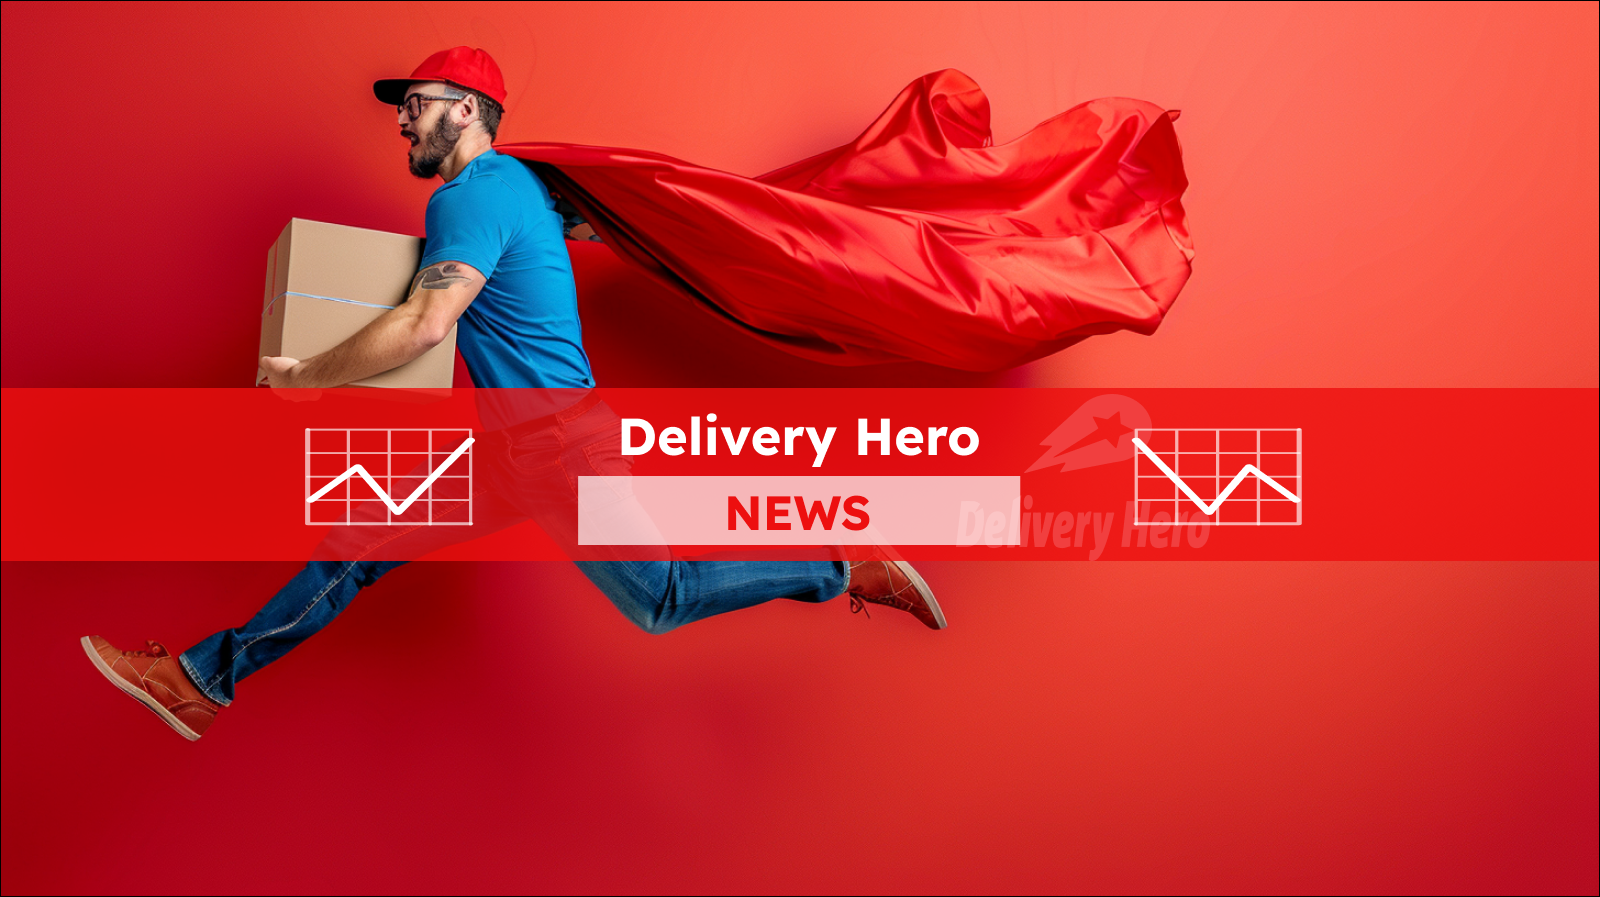 Ein Mann im Laufschritt mit rotem Umhang und Paket in der Hand vor einem roten Hintergrund mit dem Logo Delivery Hero,  mit einem Delivery Hero NEWS Banner